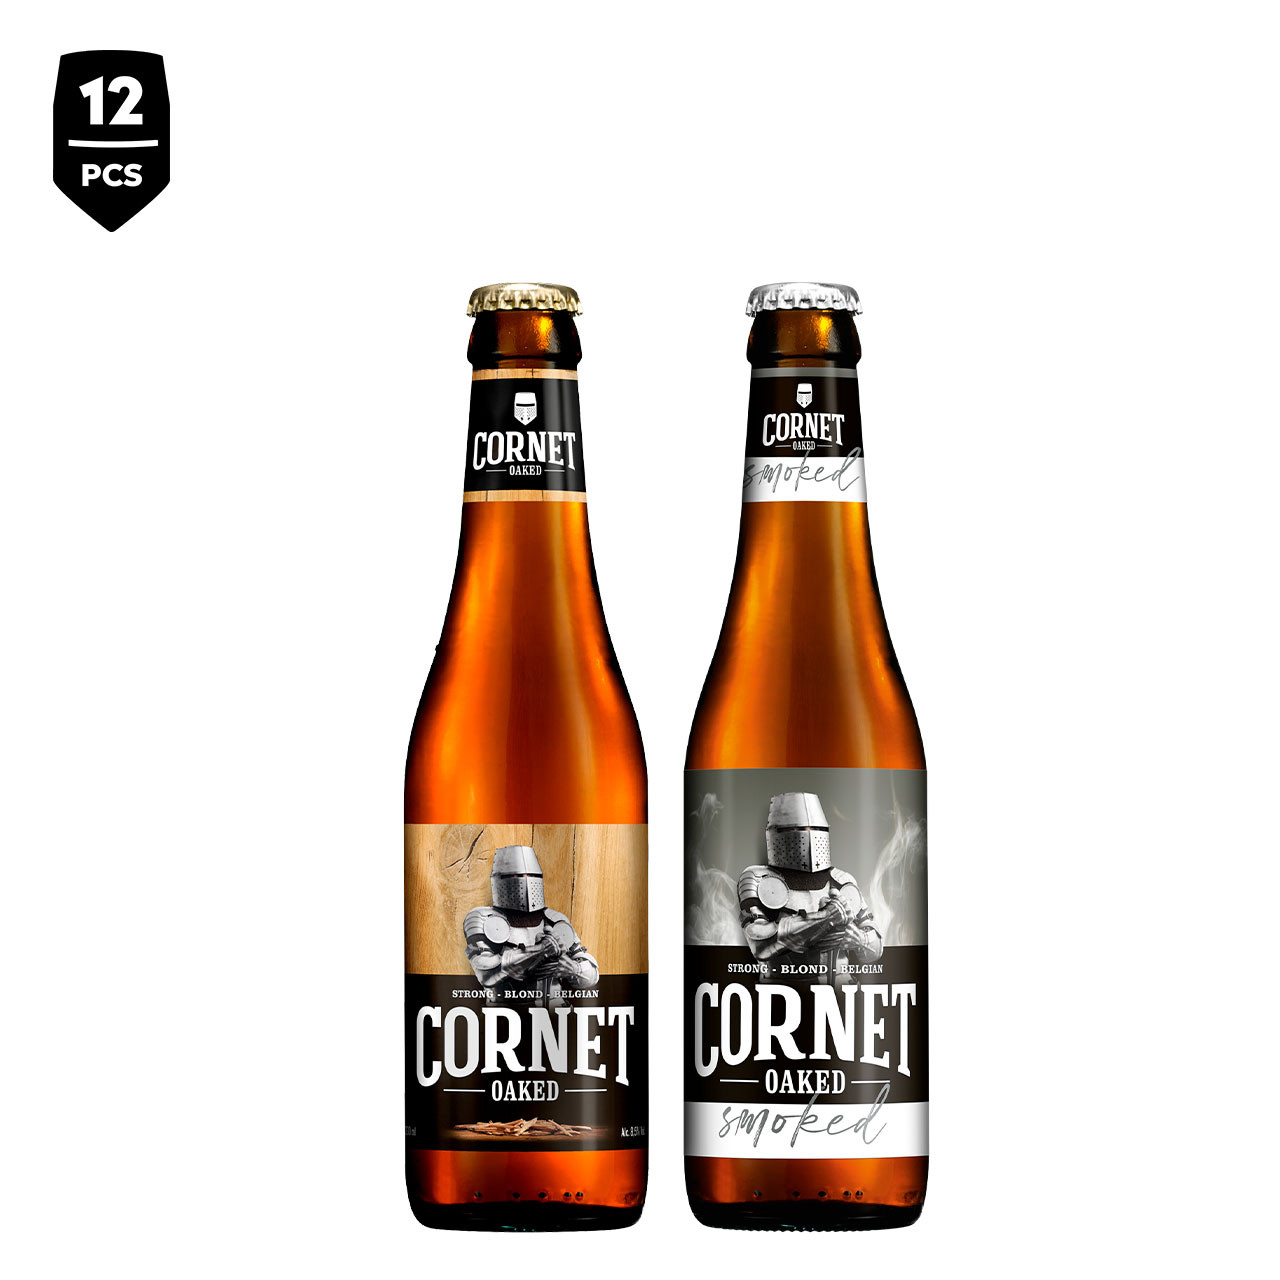 CORNET Oaked & CORNET Smoked Brouwerijpakket 12-pack - Uit assortiment